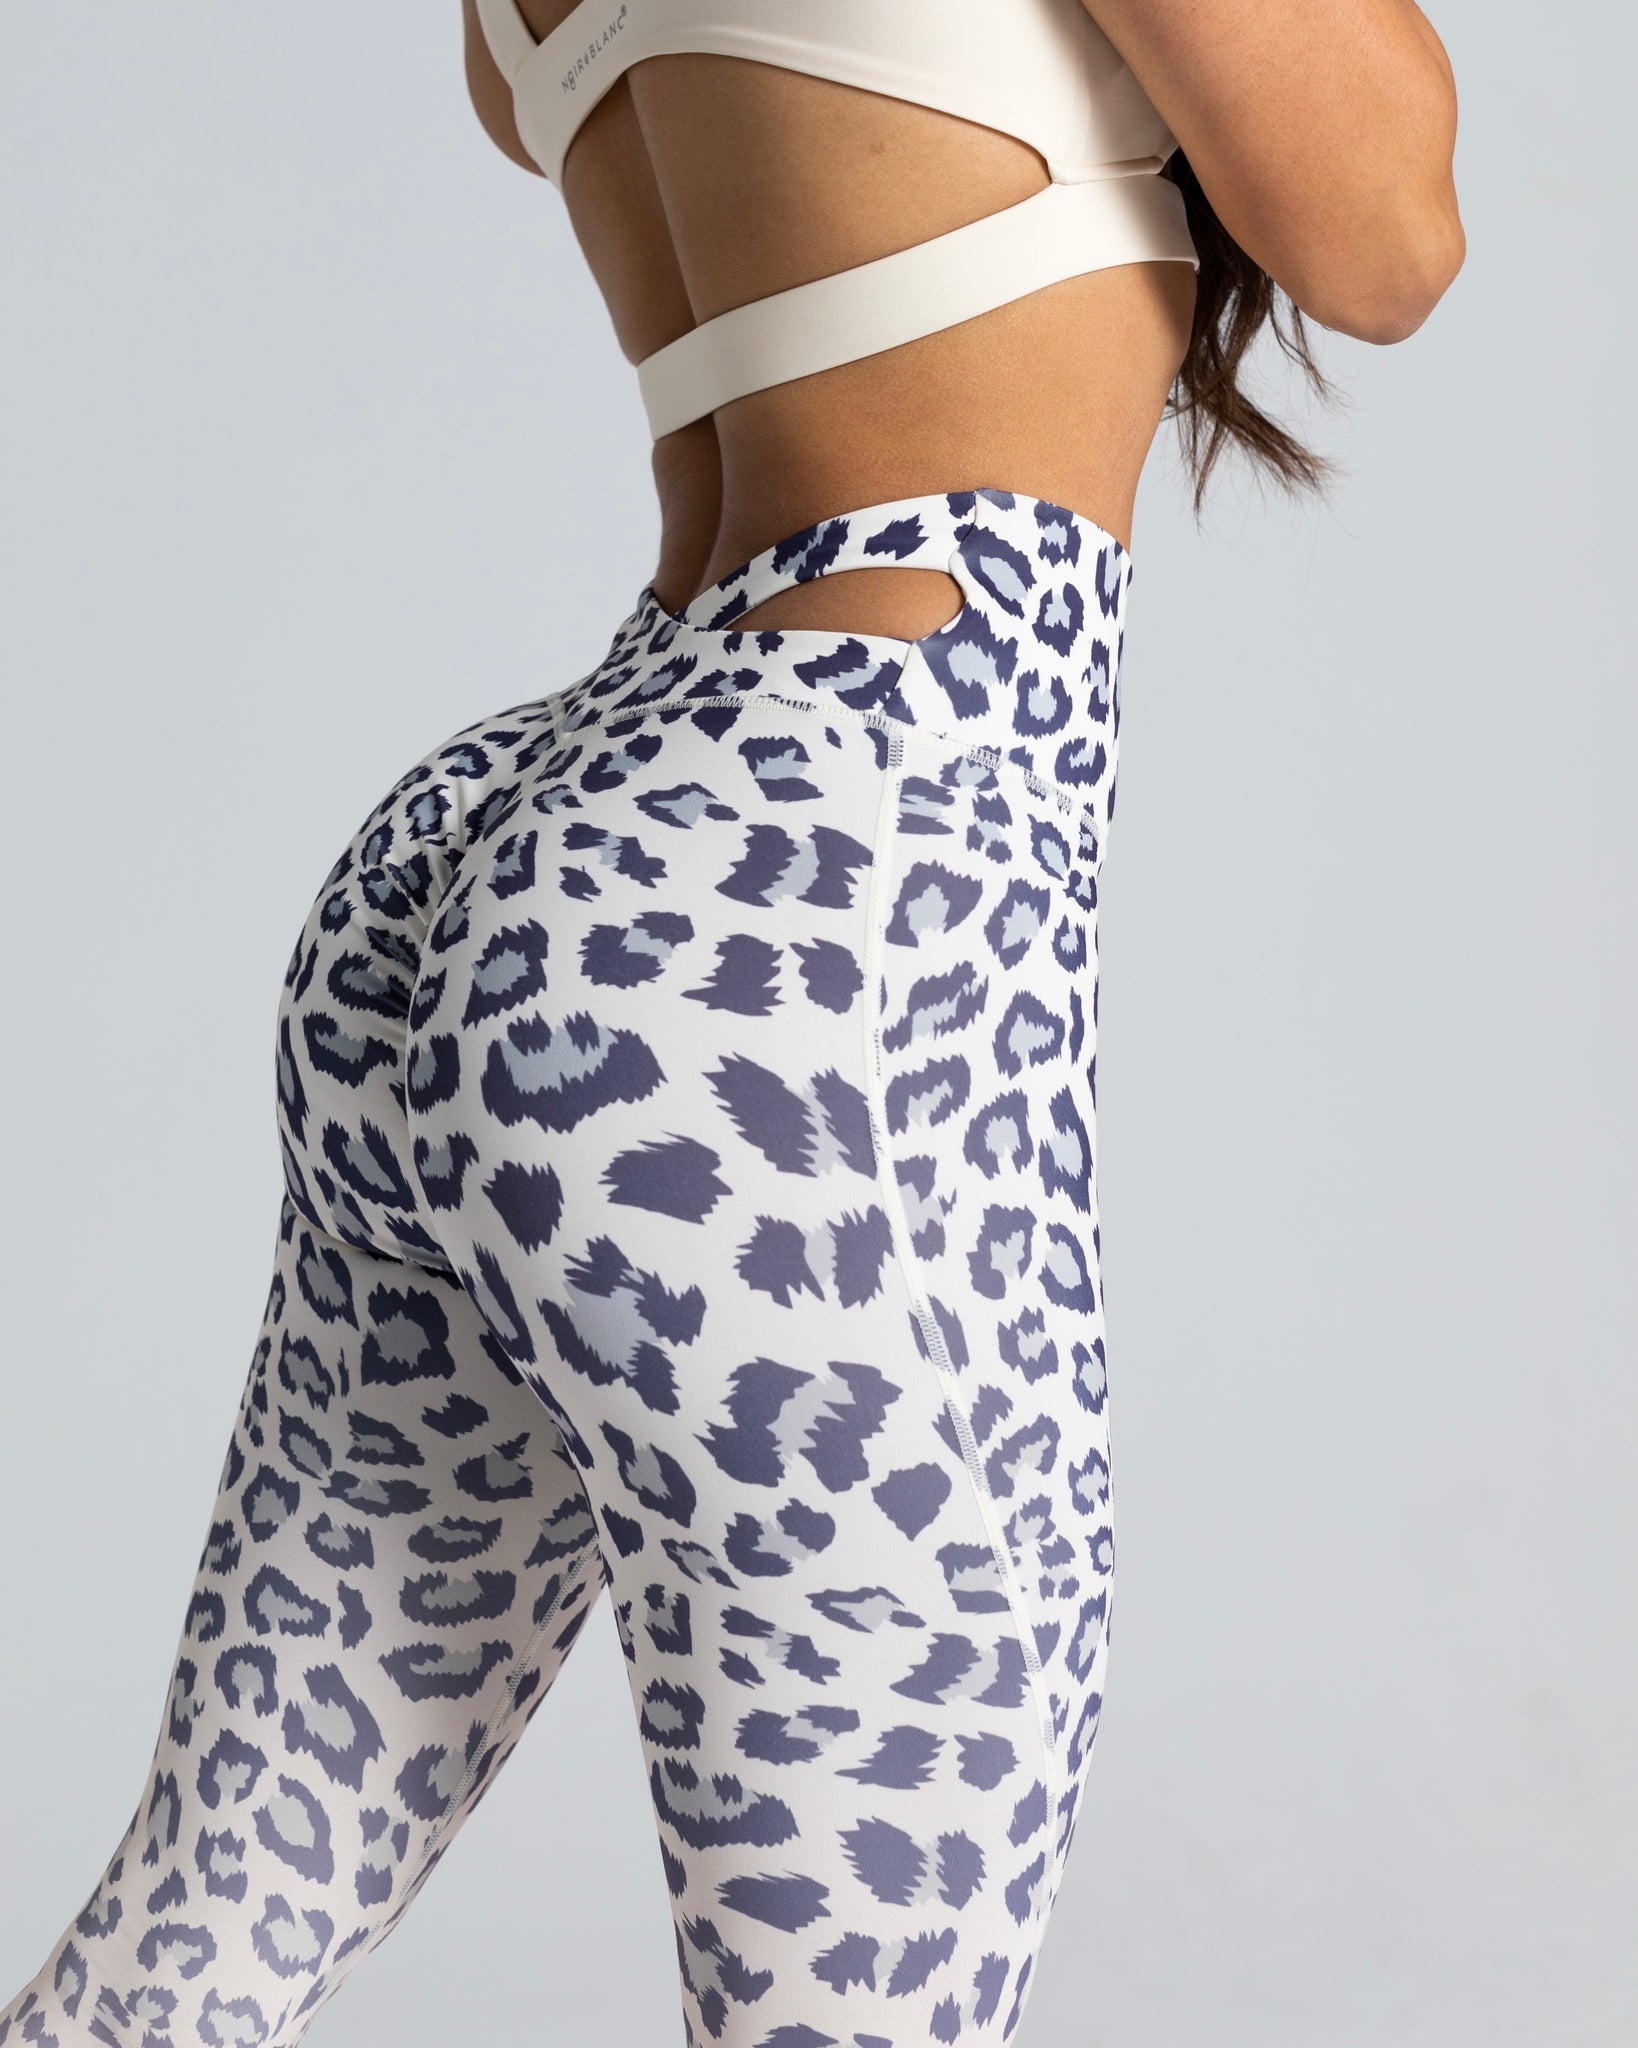 Leopard gradient scrunch legging - noireblanc